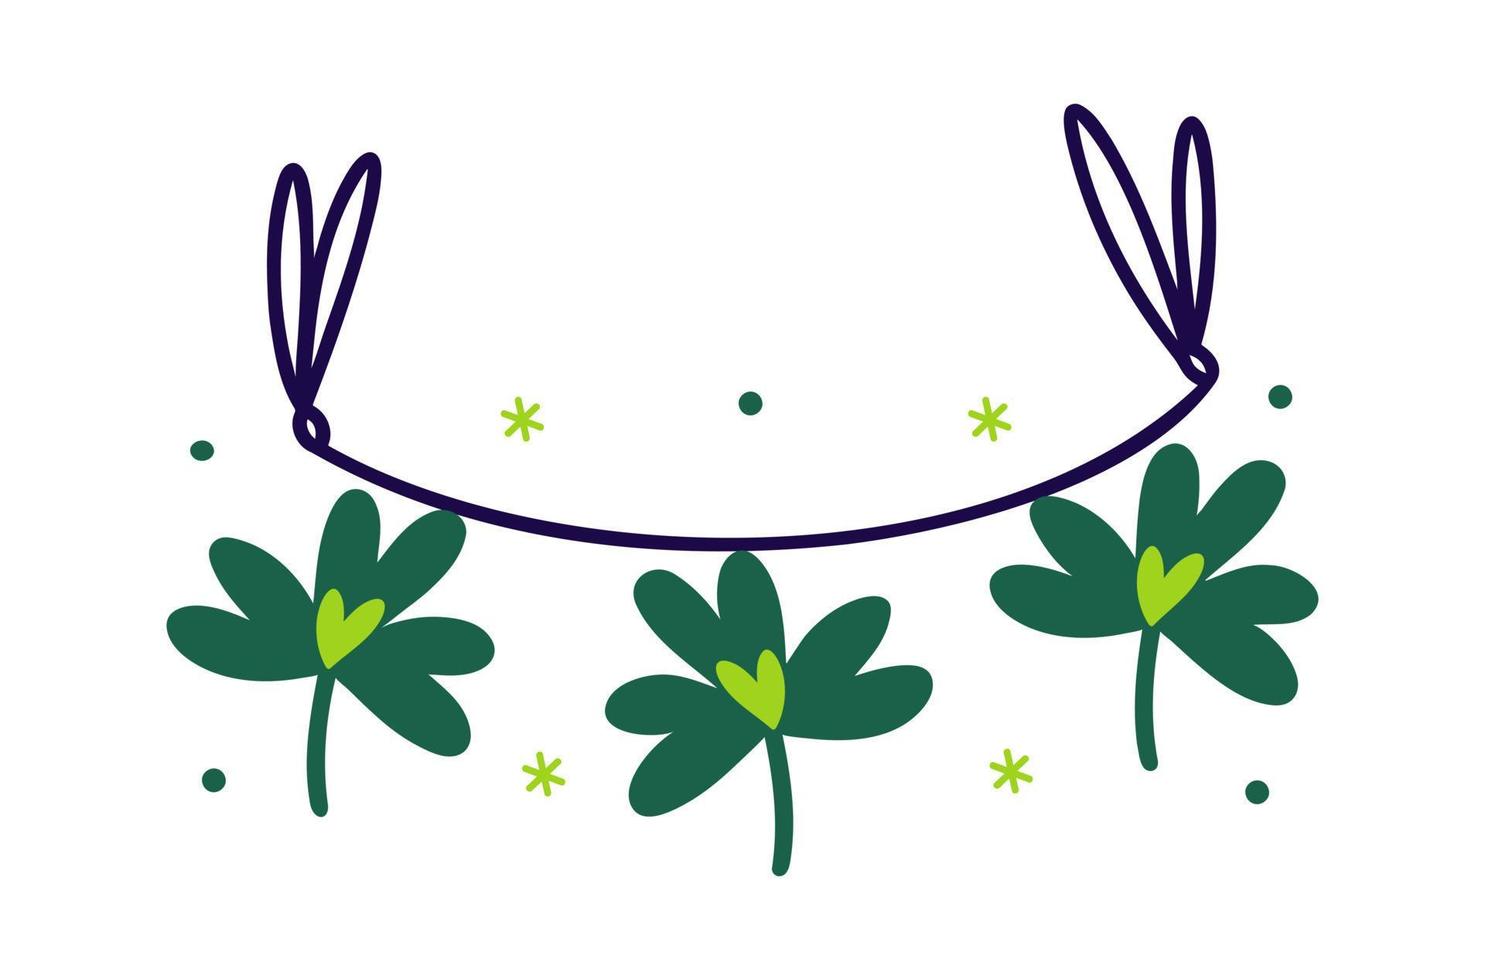 vitklöver Semester krans. grön klöver löv med en hjärta hänga på en band. irländsk symbol av Bra tur, förmögenhet, vinst. isolerat på vit. tecknad serie ClipArt för kort till st. Patricks dag, affischer, webb vektor